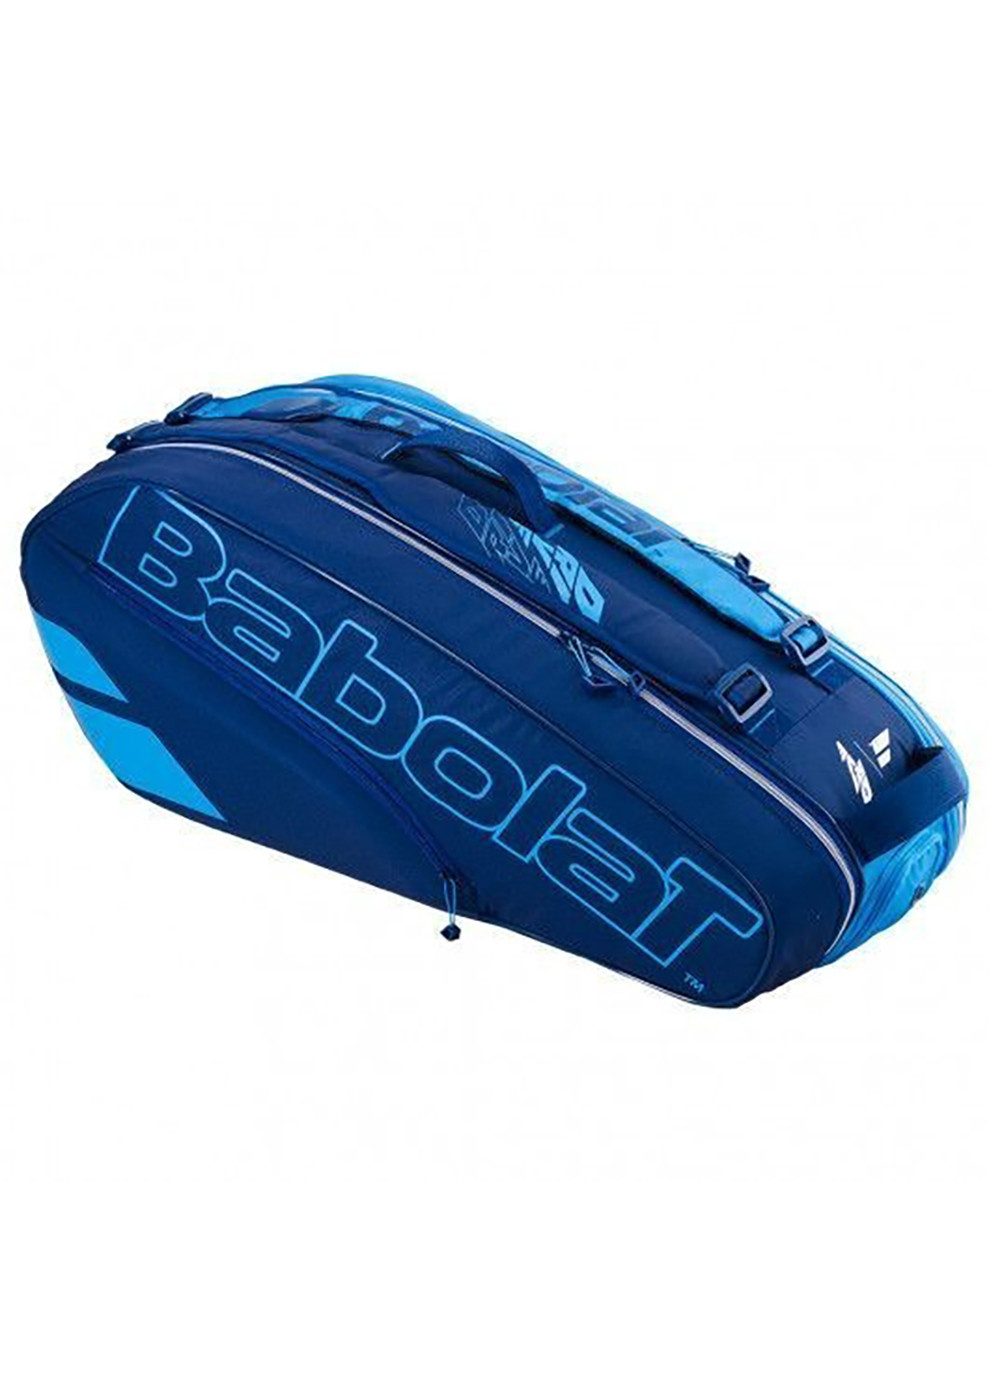 Чехол для теннисных ракеток RH X6 PURE DRIVE 6 ракеток Синий (751208/136) Babolat (258141413)